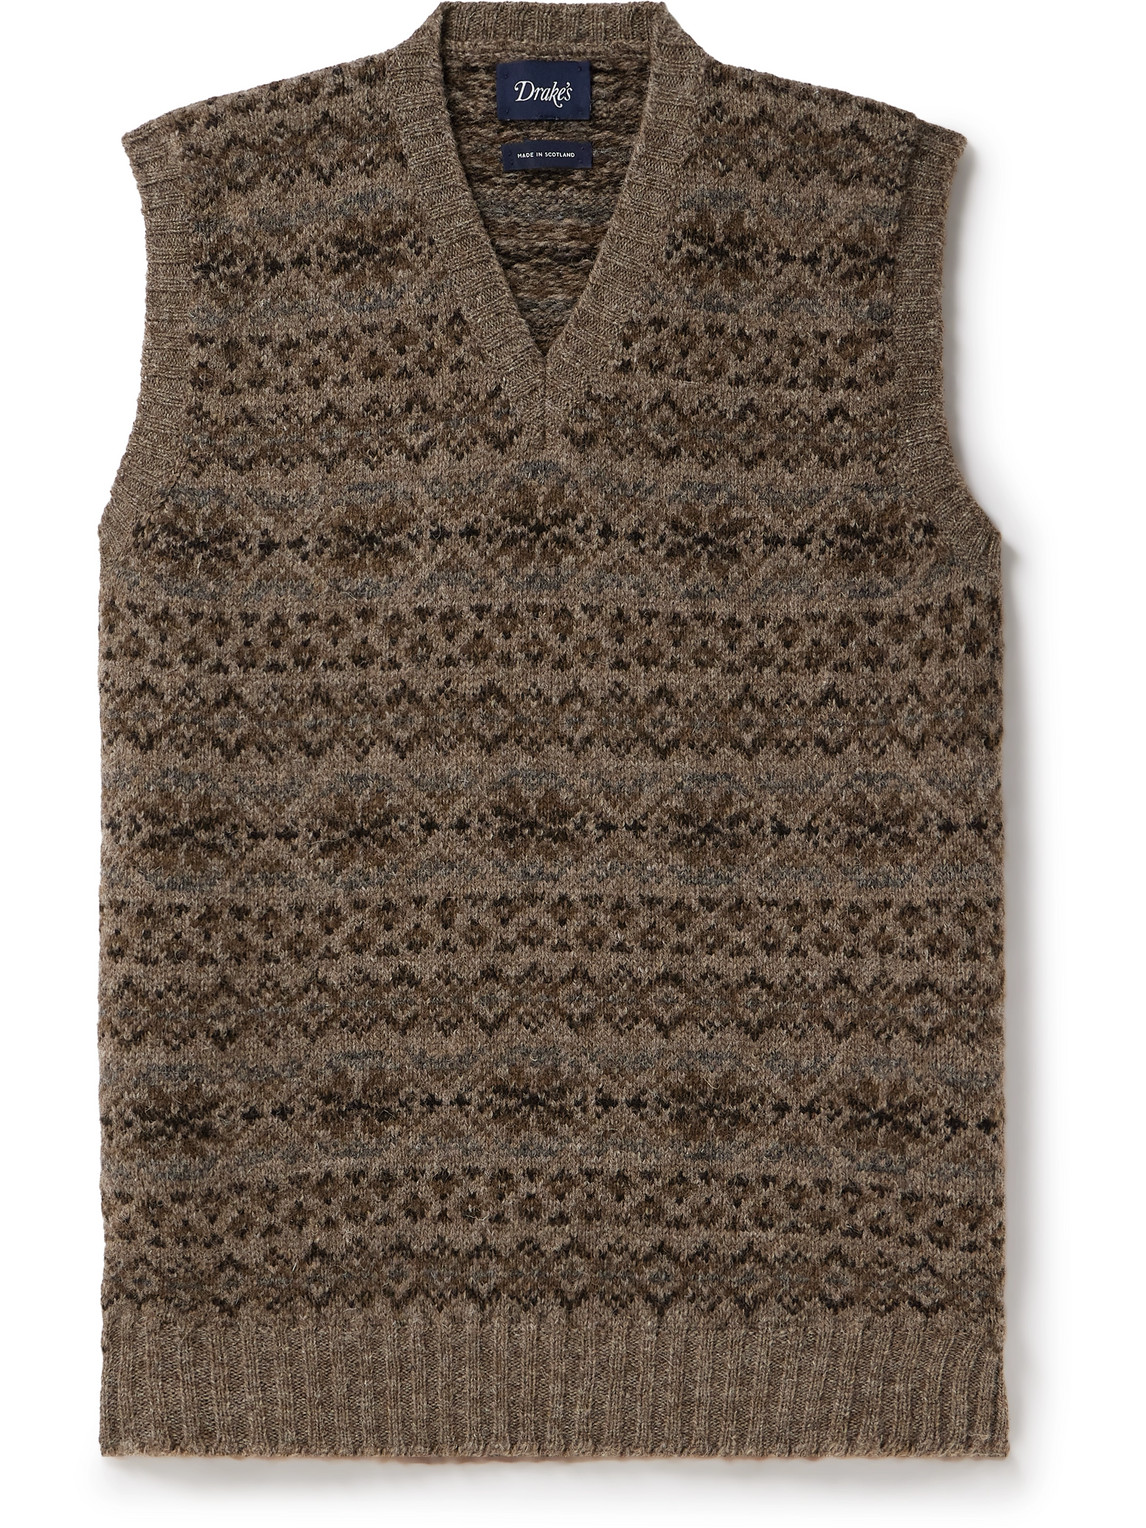 Drake's Fair Isle Wool Sweater Vest In Brown